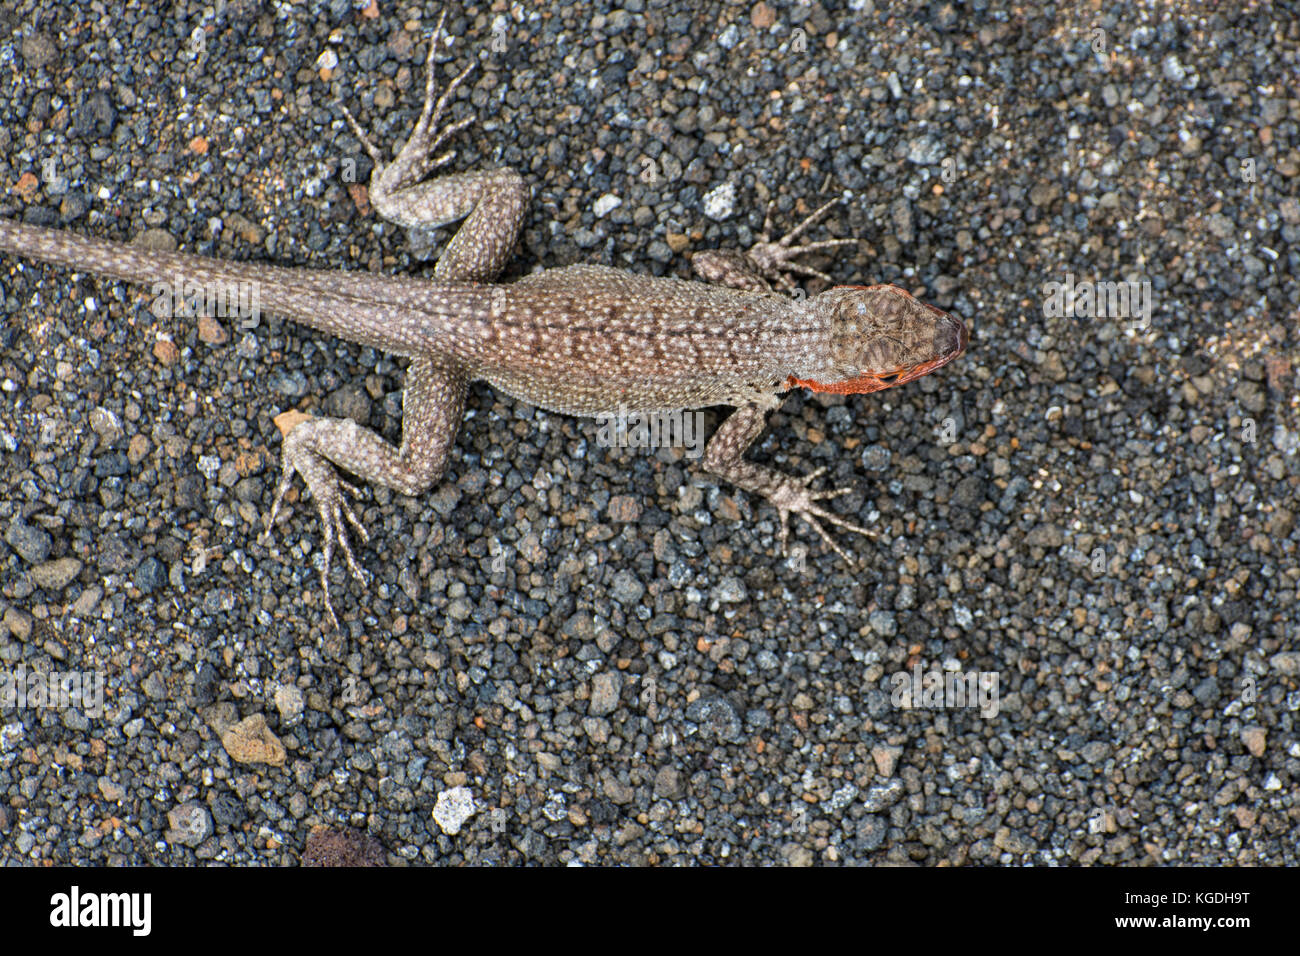 Ein lavastrom Lizard (Microlophus albemariensi) ist in seinen sandigen Umgebung getarnt, die Muster auf der Rückseite helfen, es sich harmonisch in die Umgebung ein. Stockfoto